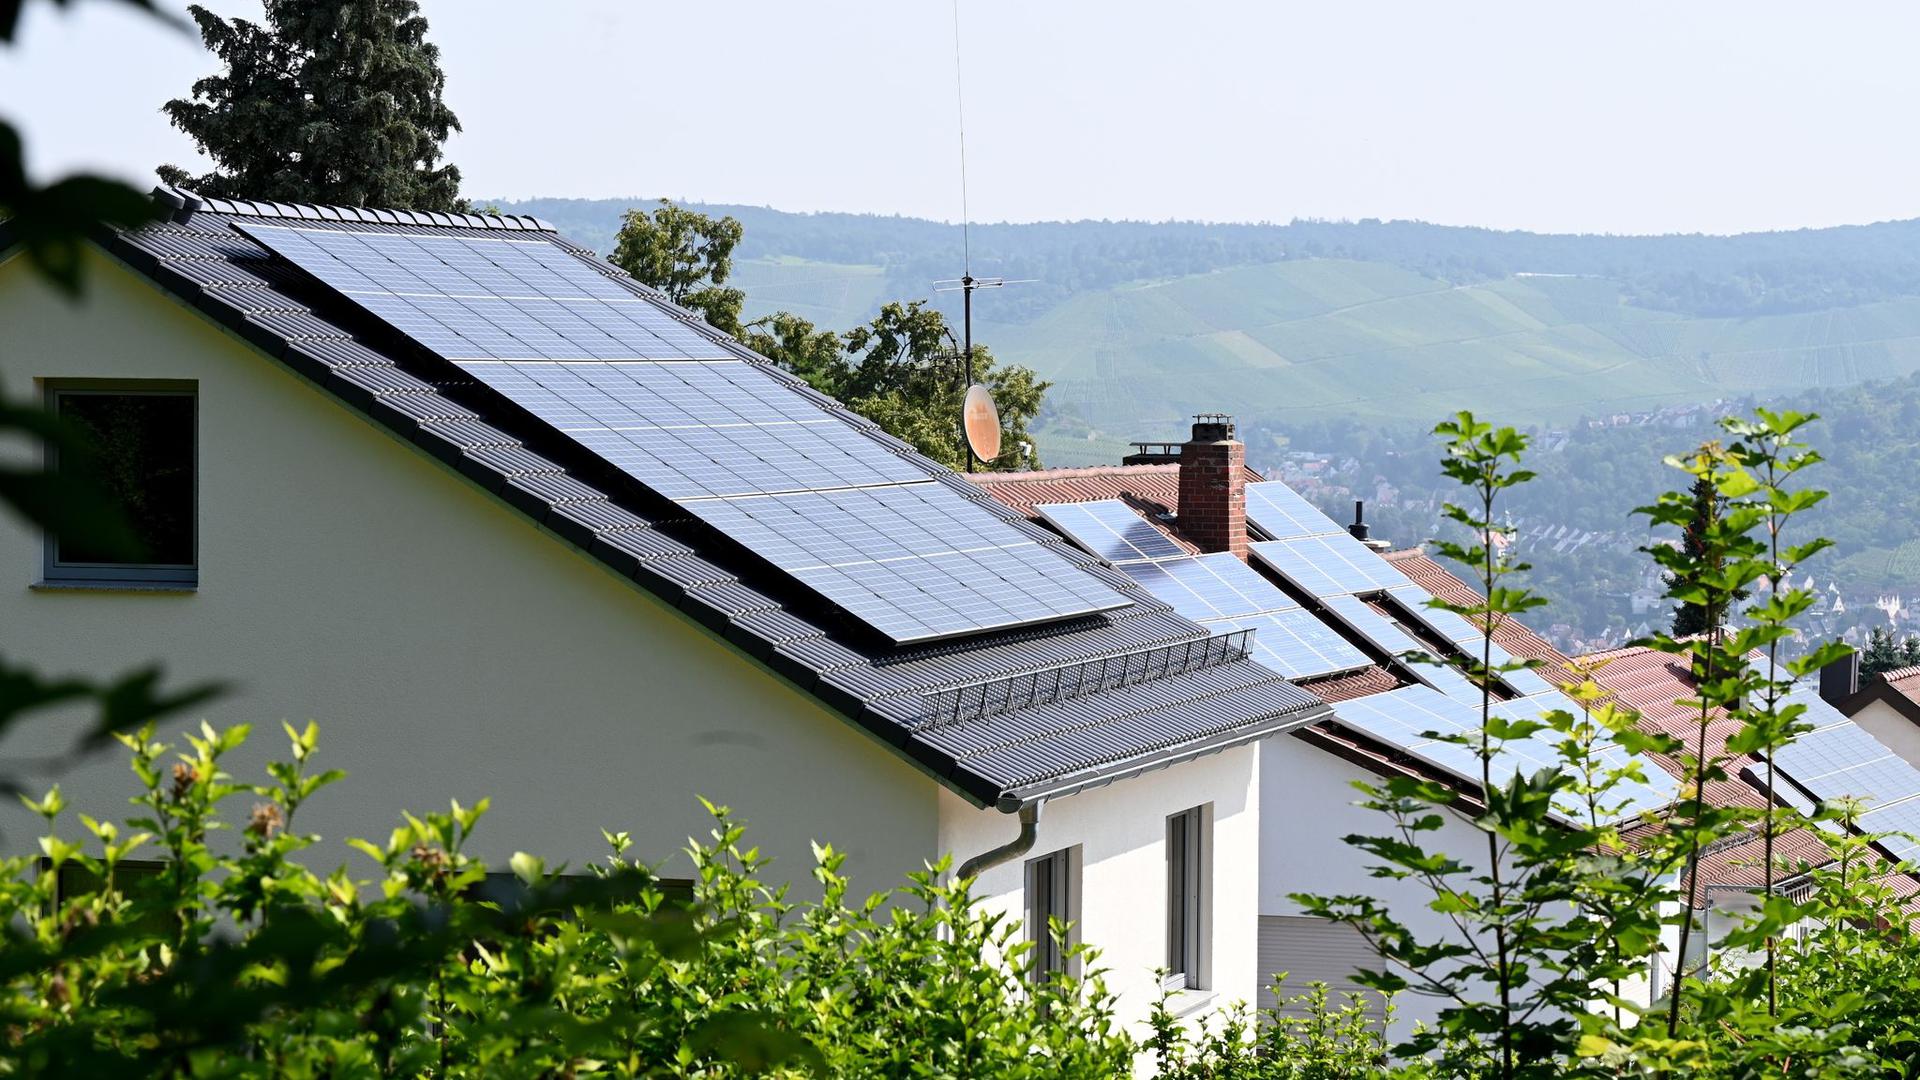 Solaranlagen sind auf Dächern von Wohnhäusern angebracht.